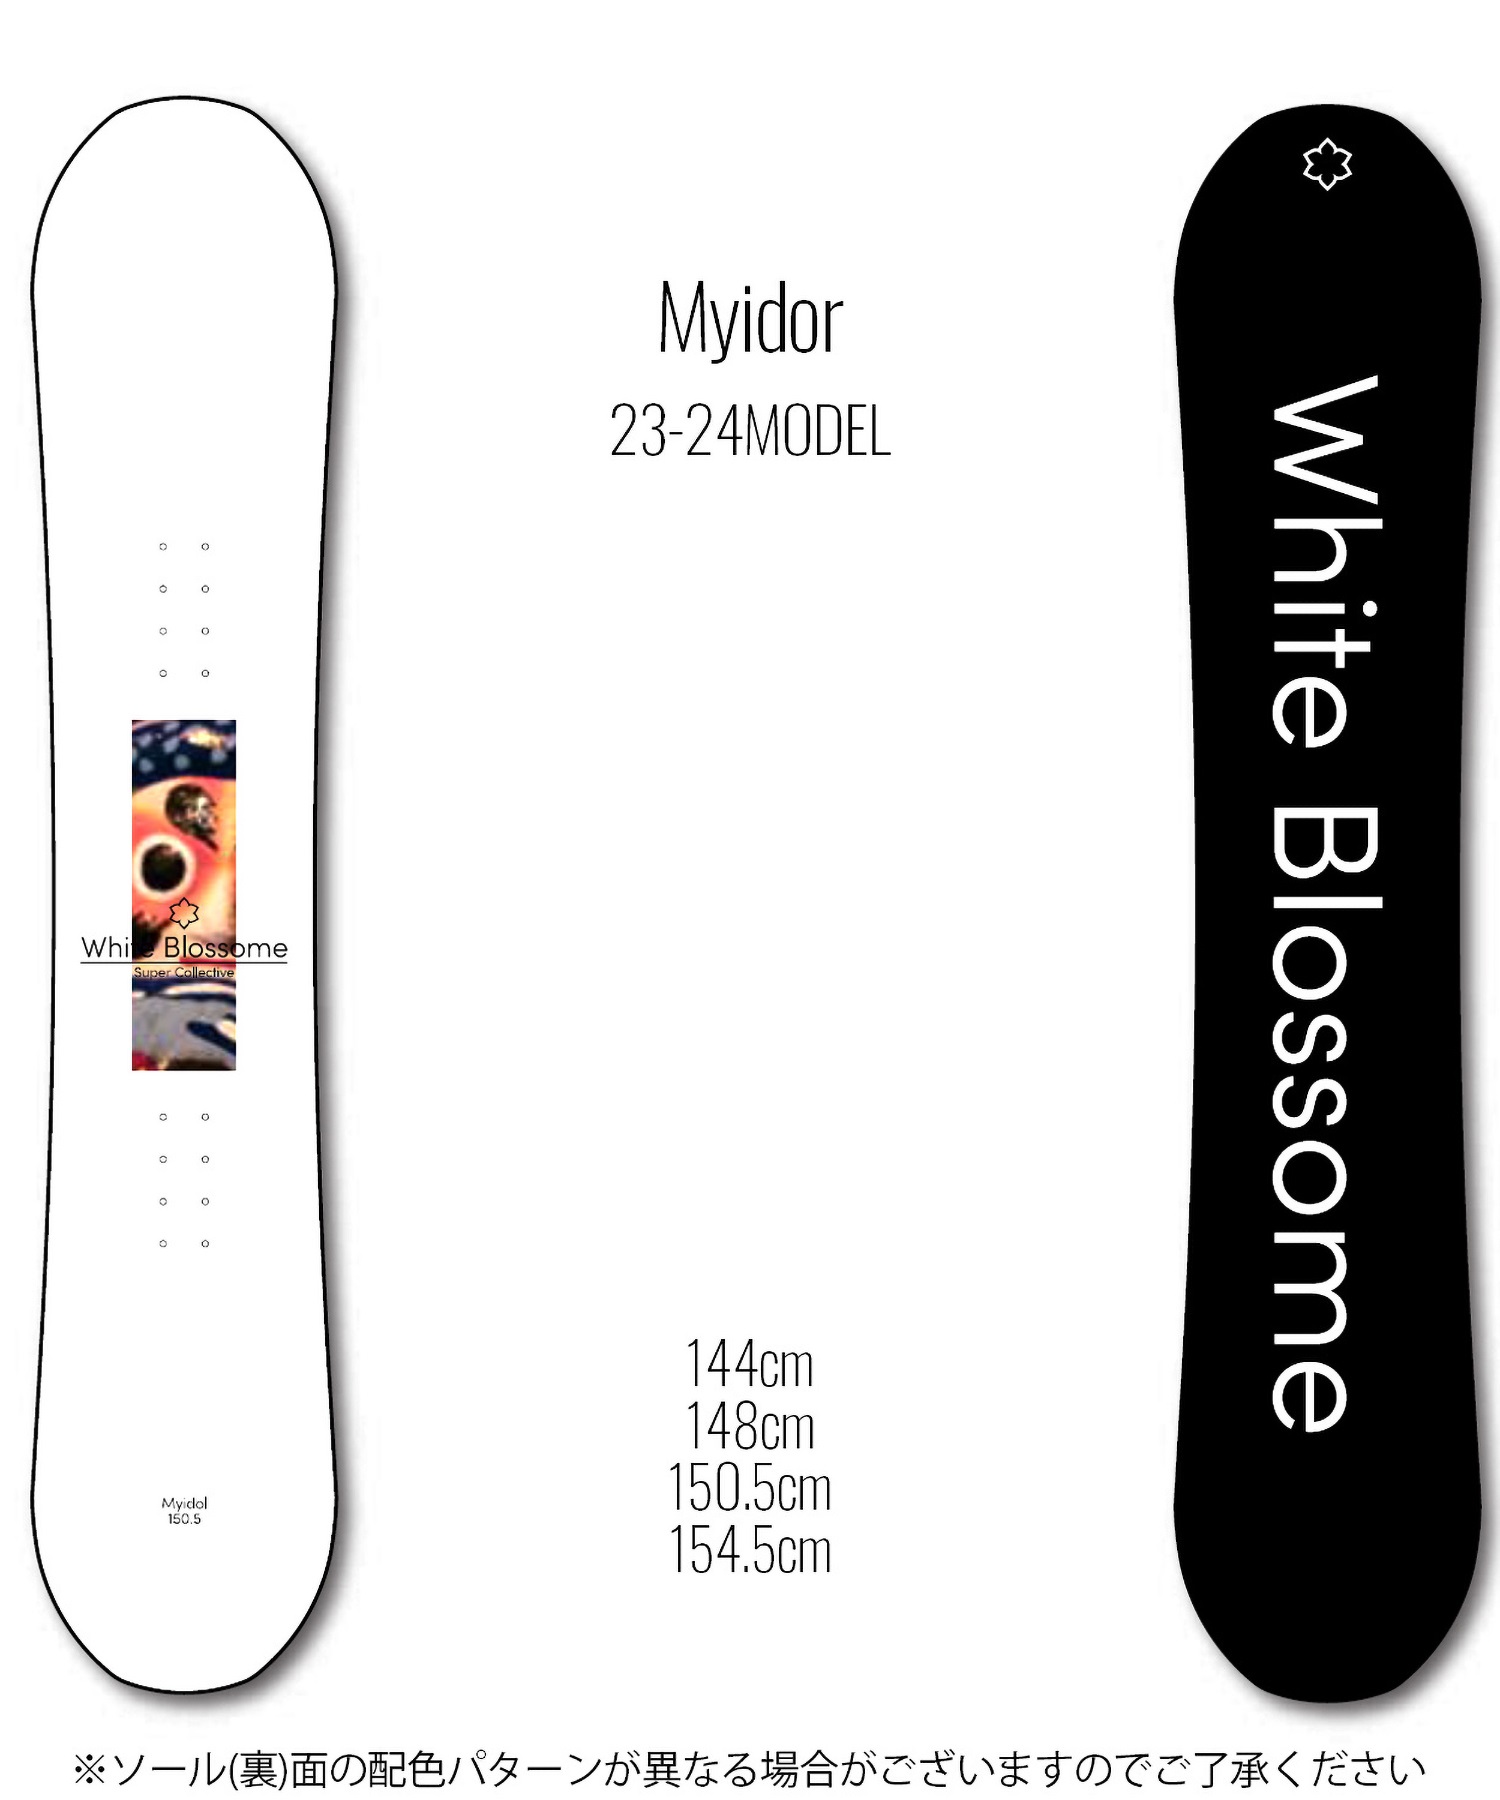 【早期購入/店頭受取対象外】スノーボード 板 メンズ White Blossome ホワイトブロッサム Myidor 23-24モデル ムラサキスポーツ KK C31(Myidor-144cm)